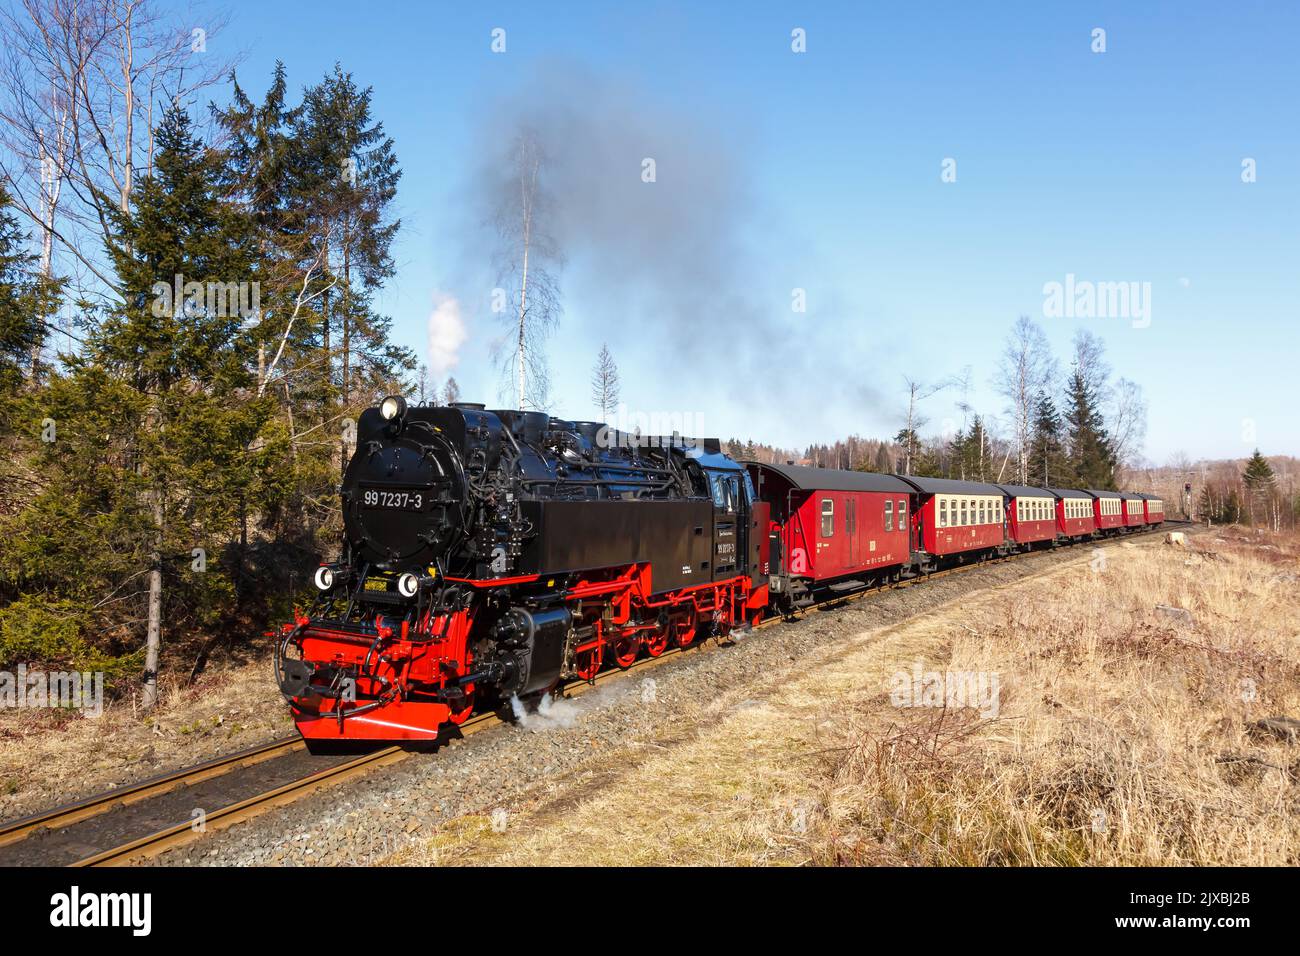 Brockenbahn steam train locomotive railway rail departing Drei Annen Hohne in Germany Stock Photo